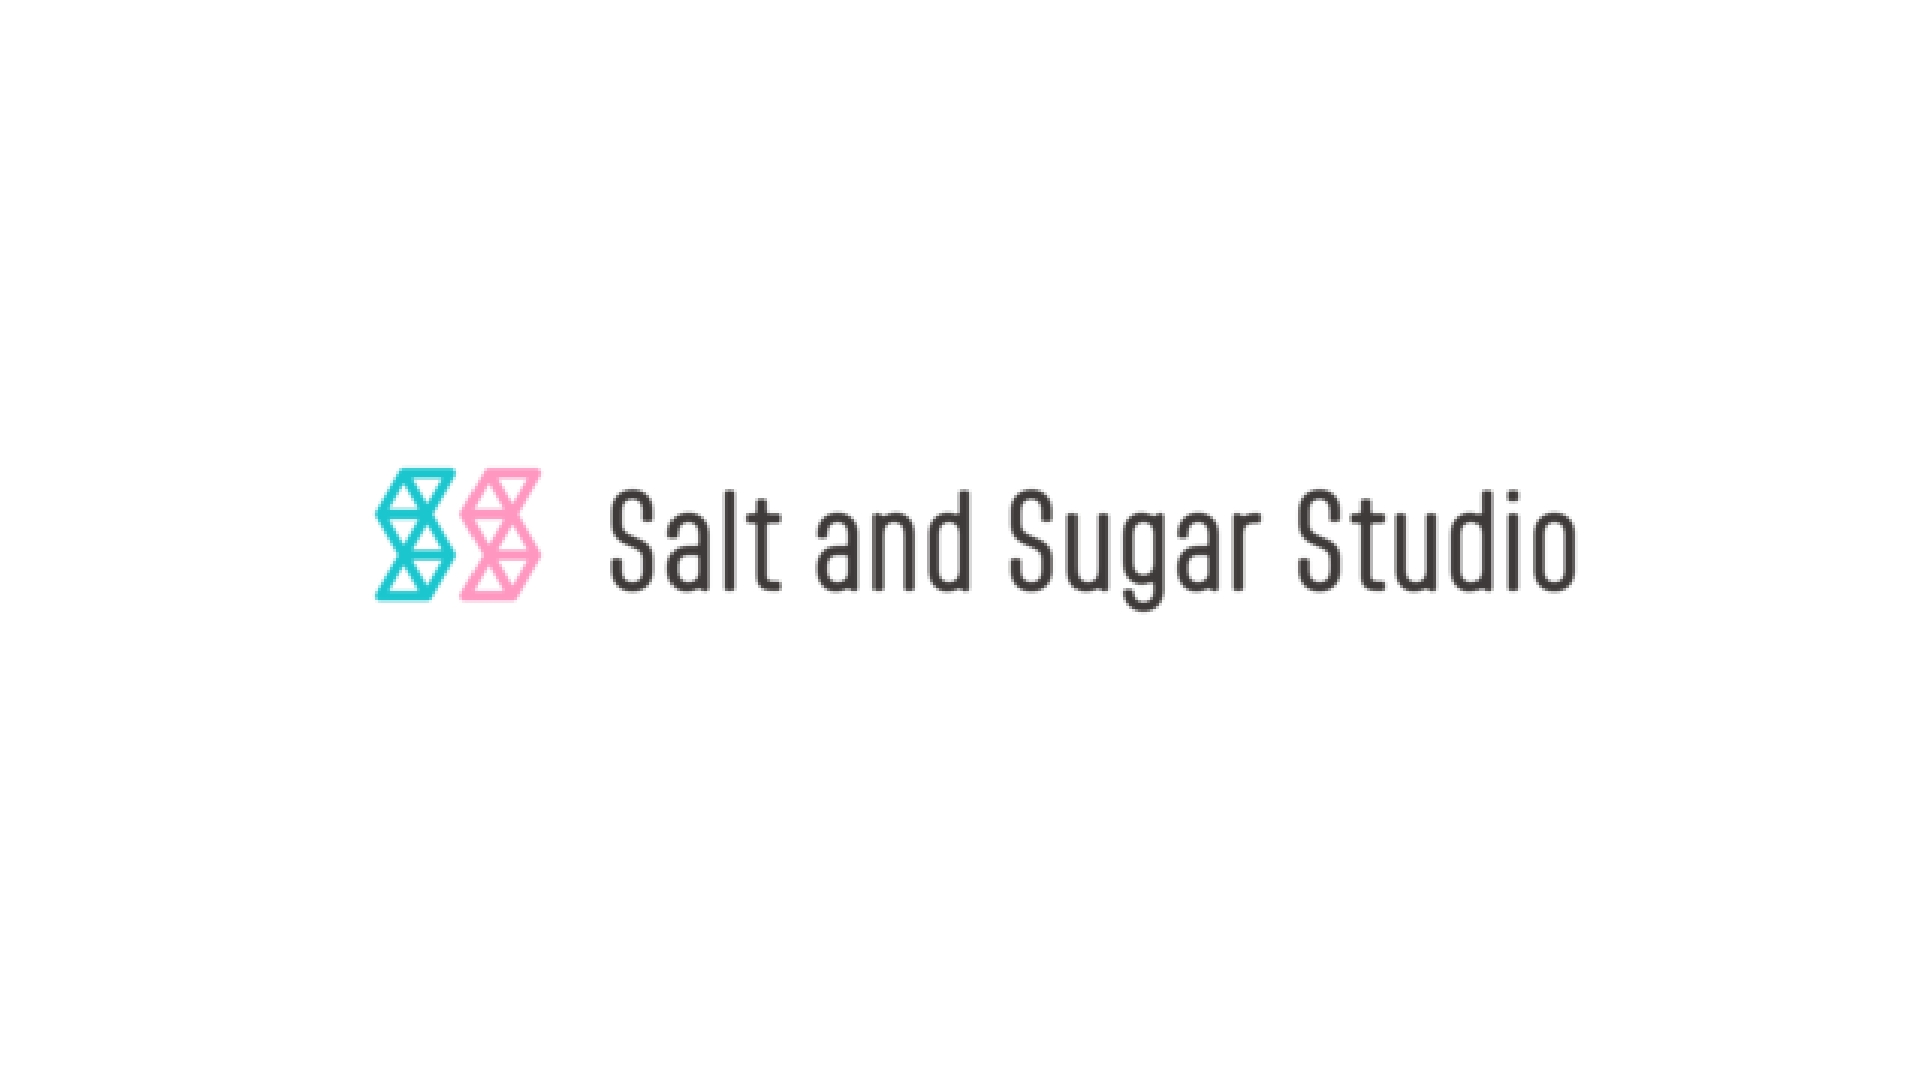 株式会社Salt and Sugar Studio、第三者割当増資により資金調達を実施